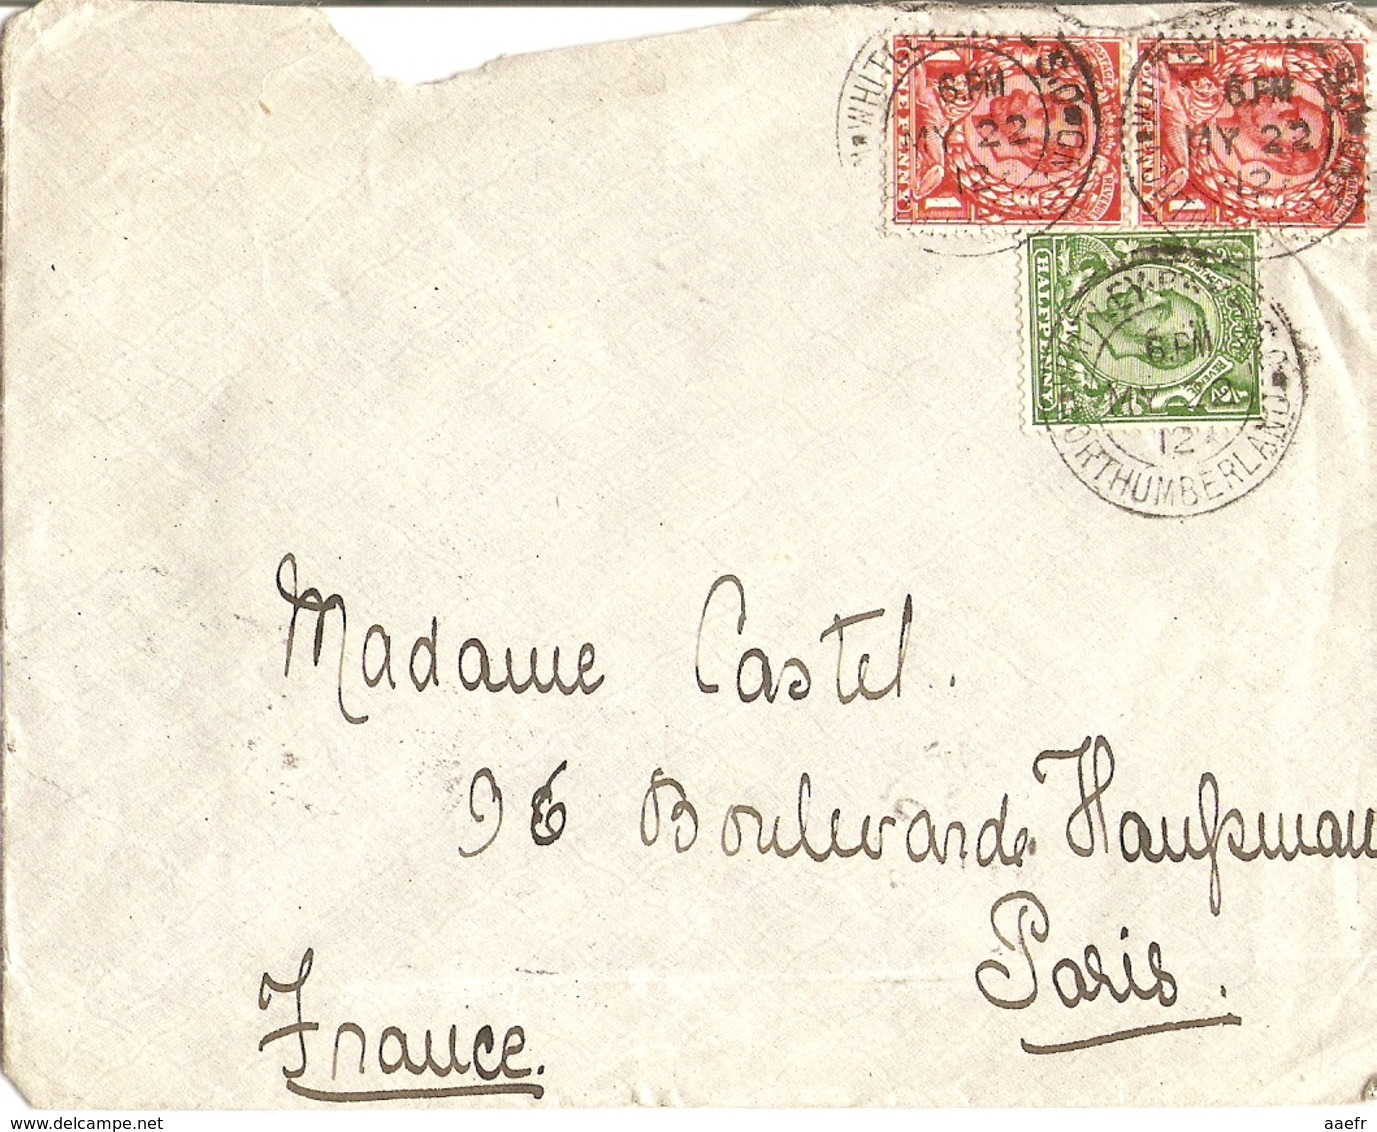 Grande Bretagne 1912  - Enveloppe De Whitley Bay/Northumberland à Paris/France  - Cachets De Réception Paris Distribut - Lettres & Documents